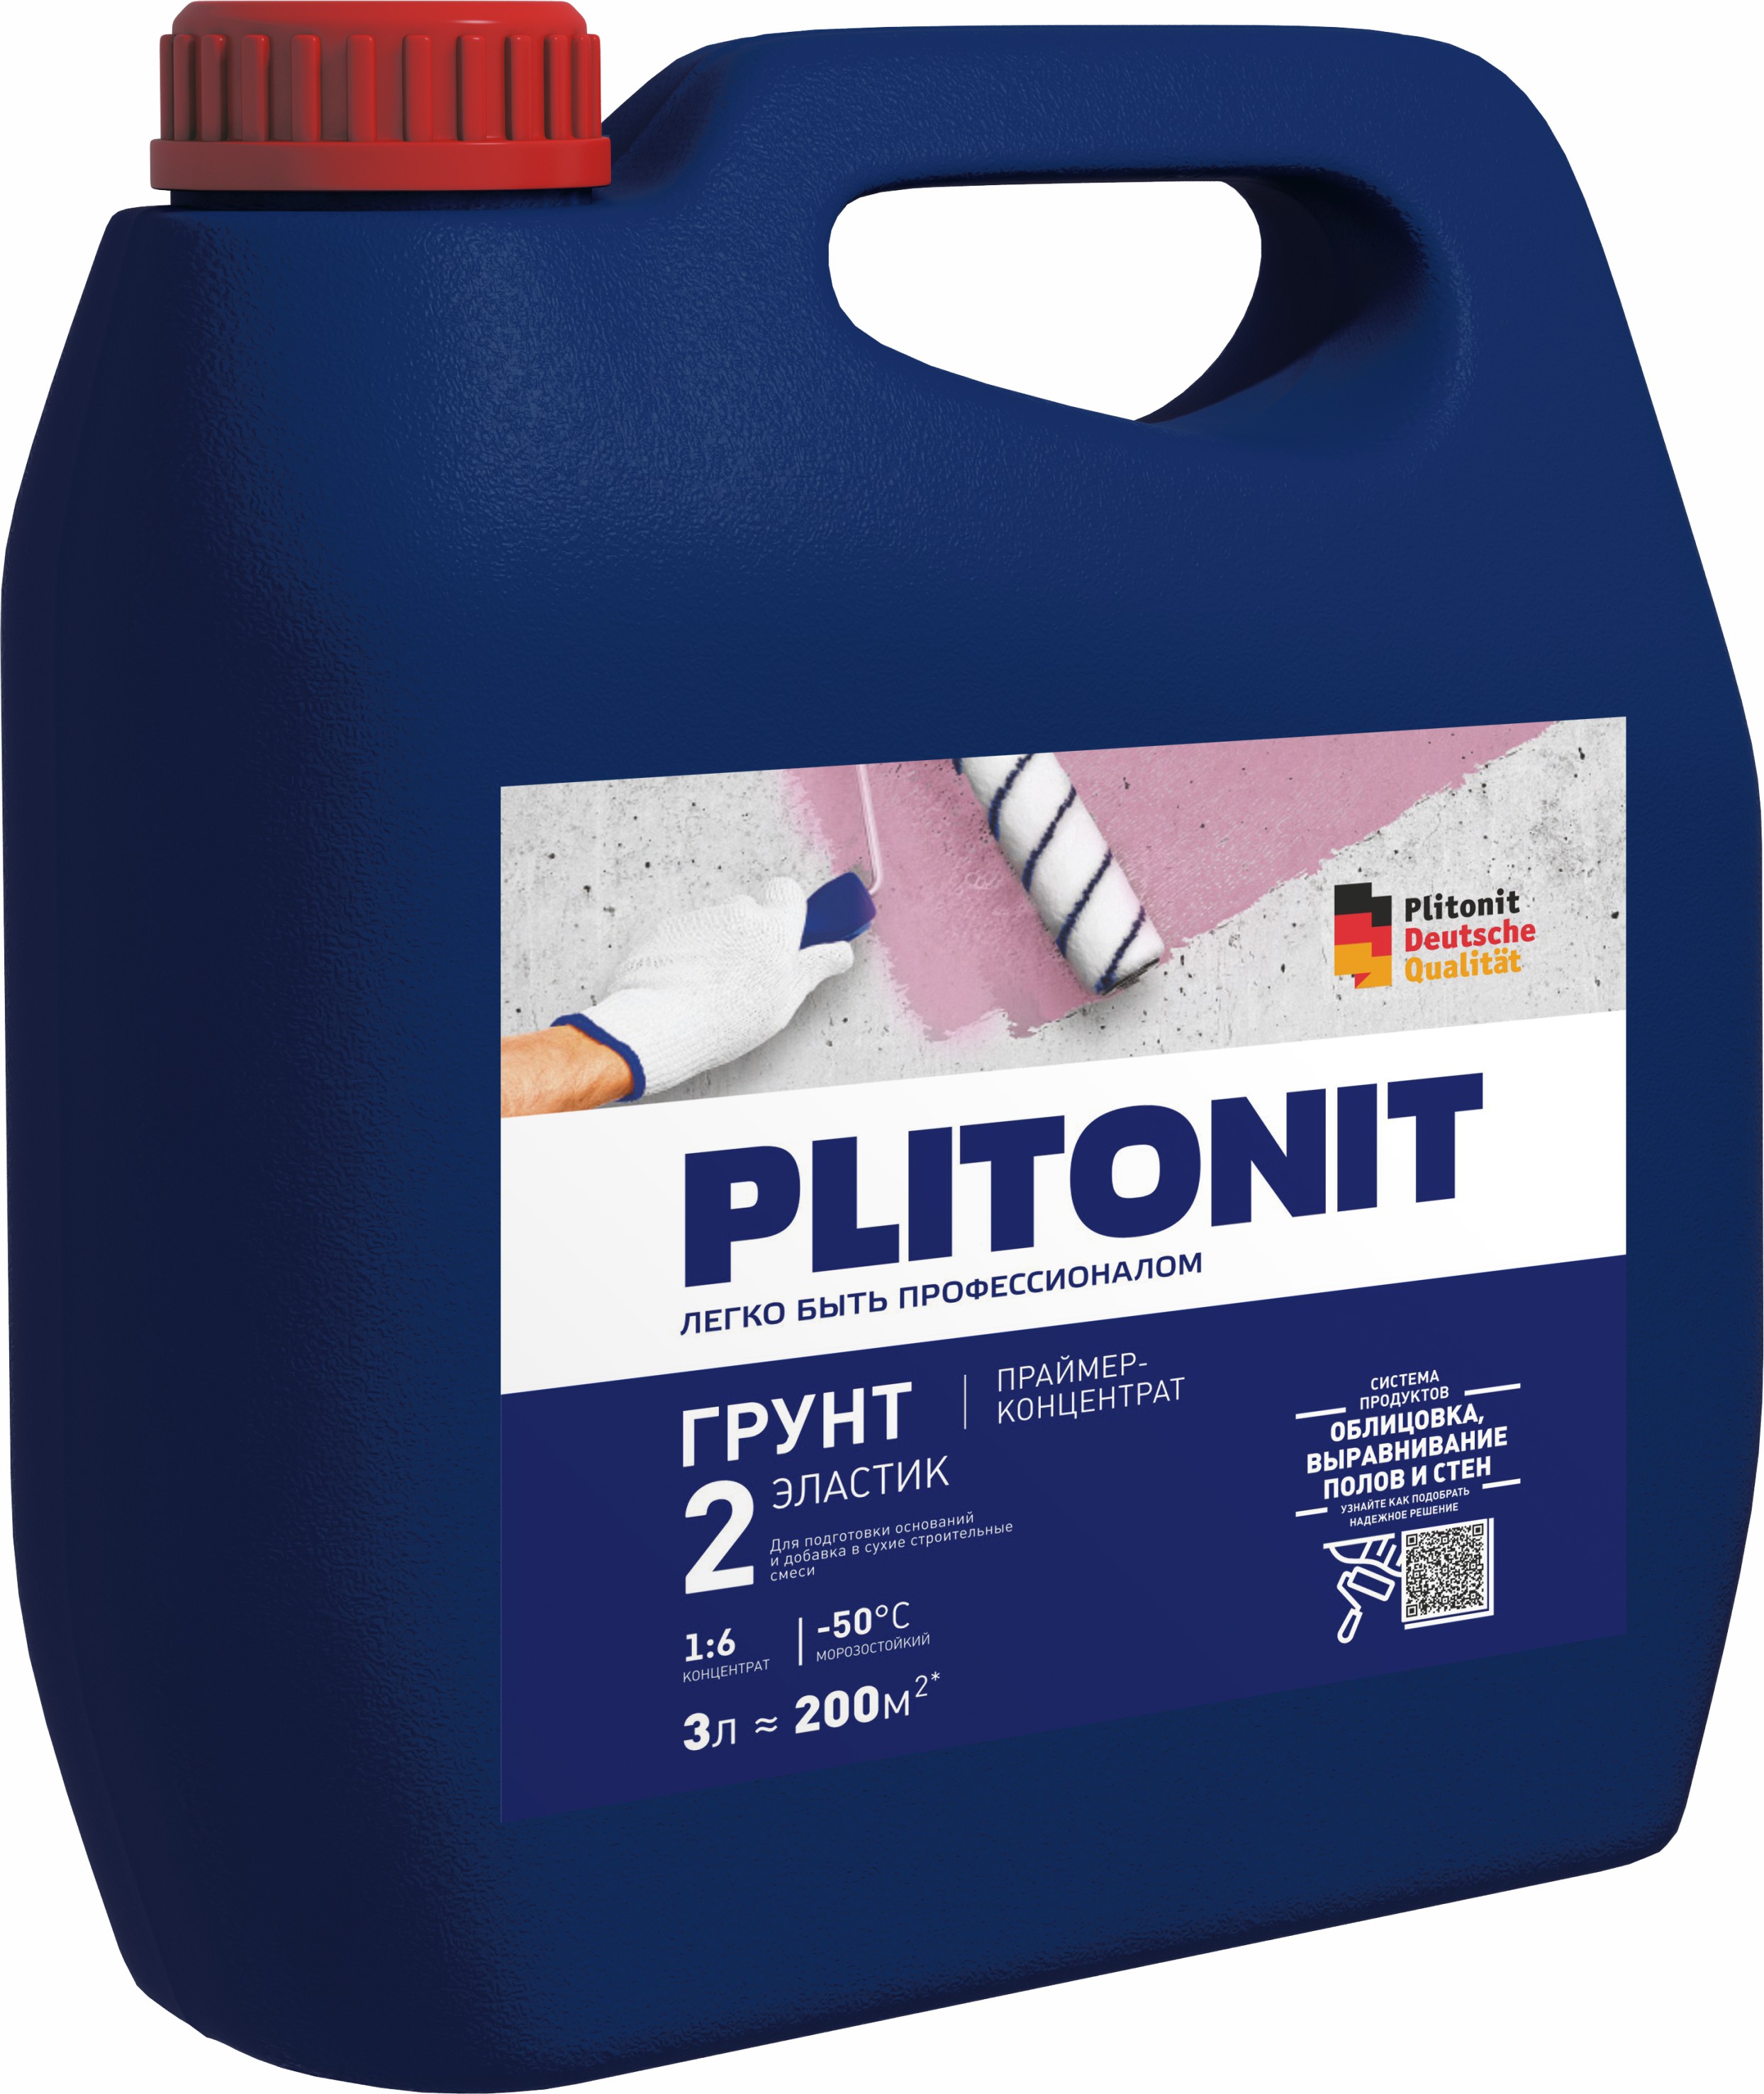 PLITONIT Грунт 2 Эластик -3 праймер-концентрат и пластификатор 1:6 акрилатный для подготовки оснований